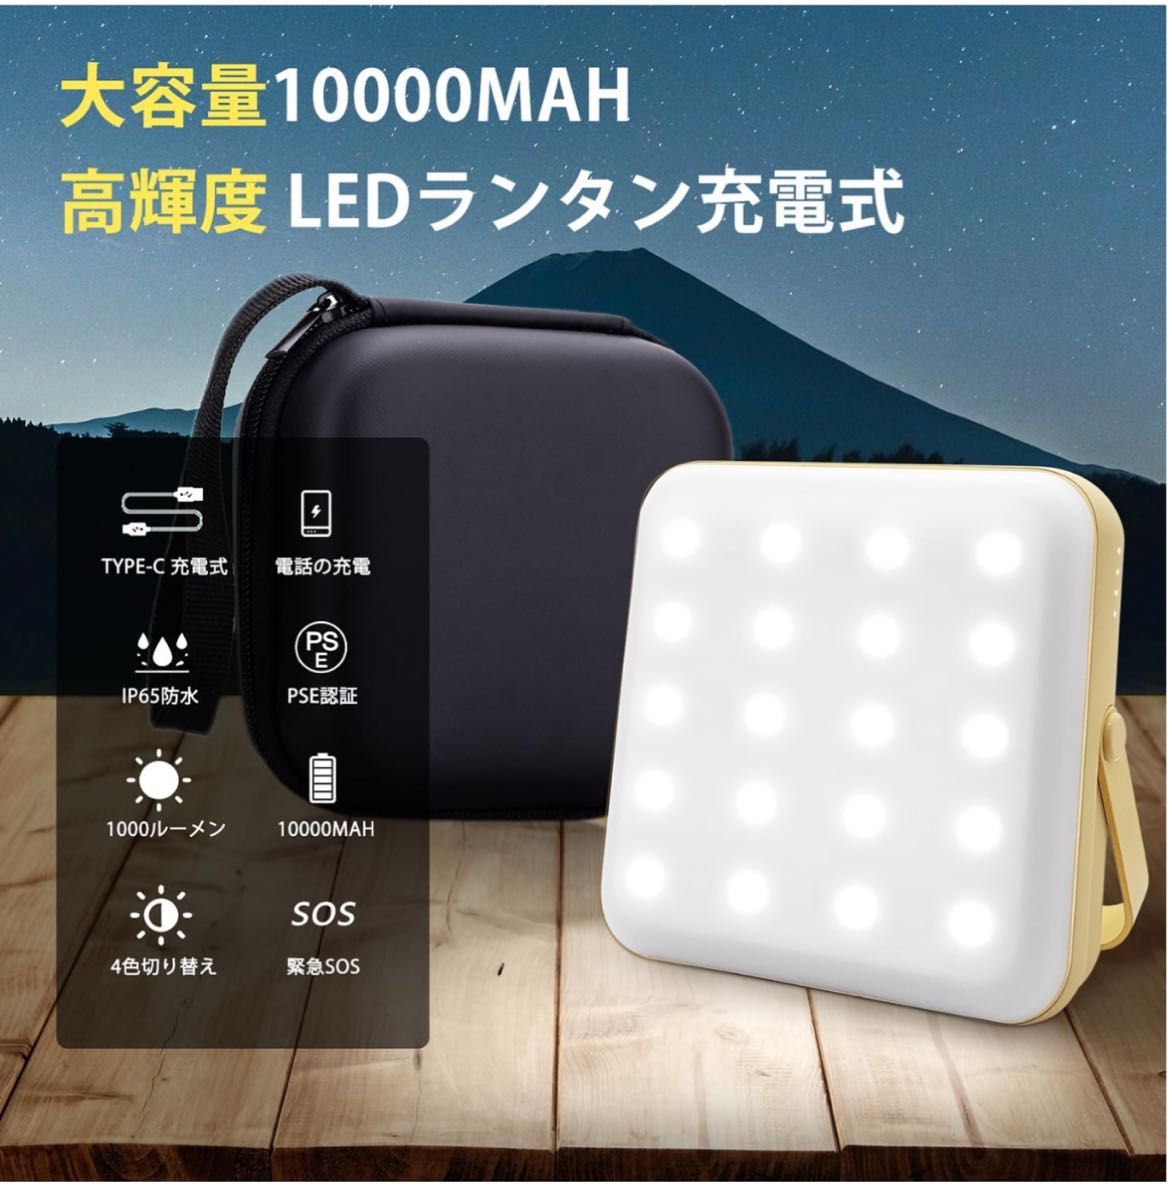 【10000mAh led ランタン 収納ボックス付き】 キャンプライト 1000ルーメン Type-c 充電式 4つ点灯モード